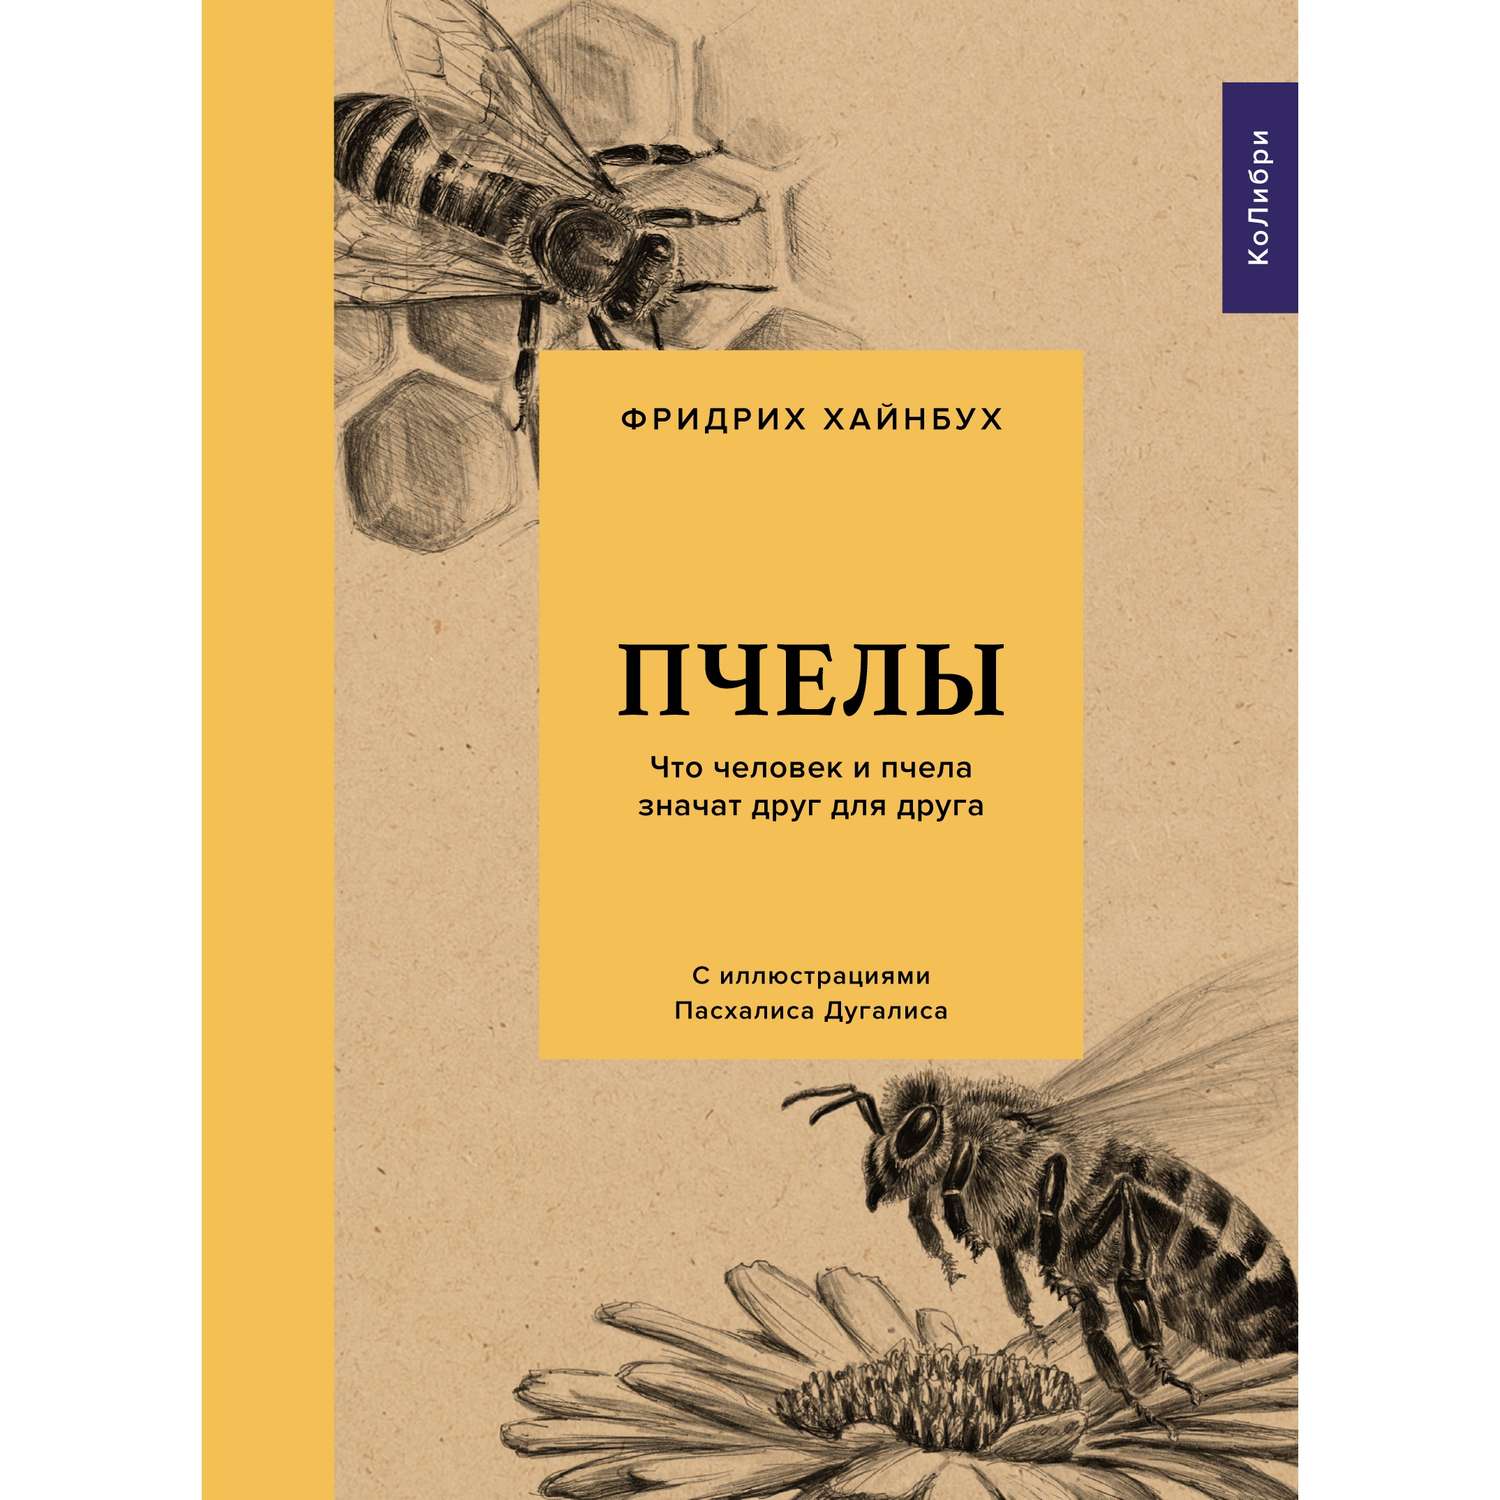 Книга КОЛИБРИ Пчелы. Что человек и пчела значат друг для друга Хайнбух Ф. Серия: Культ природы - фото 1